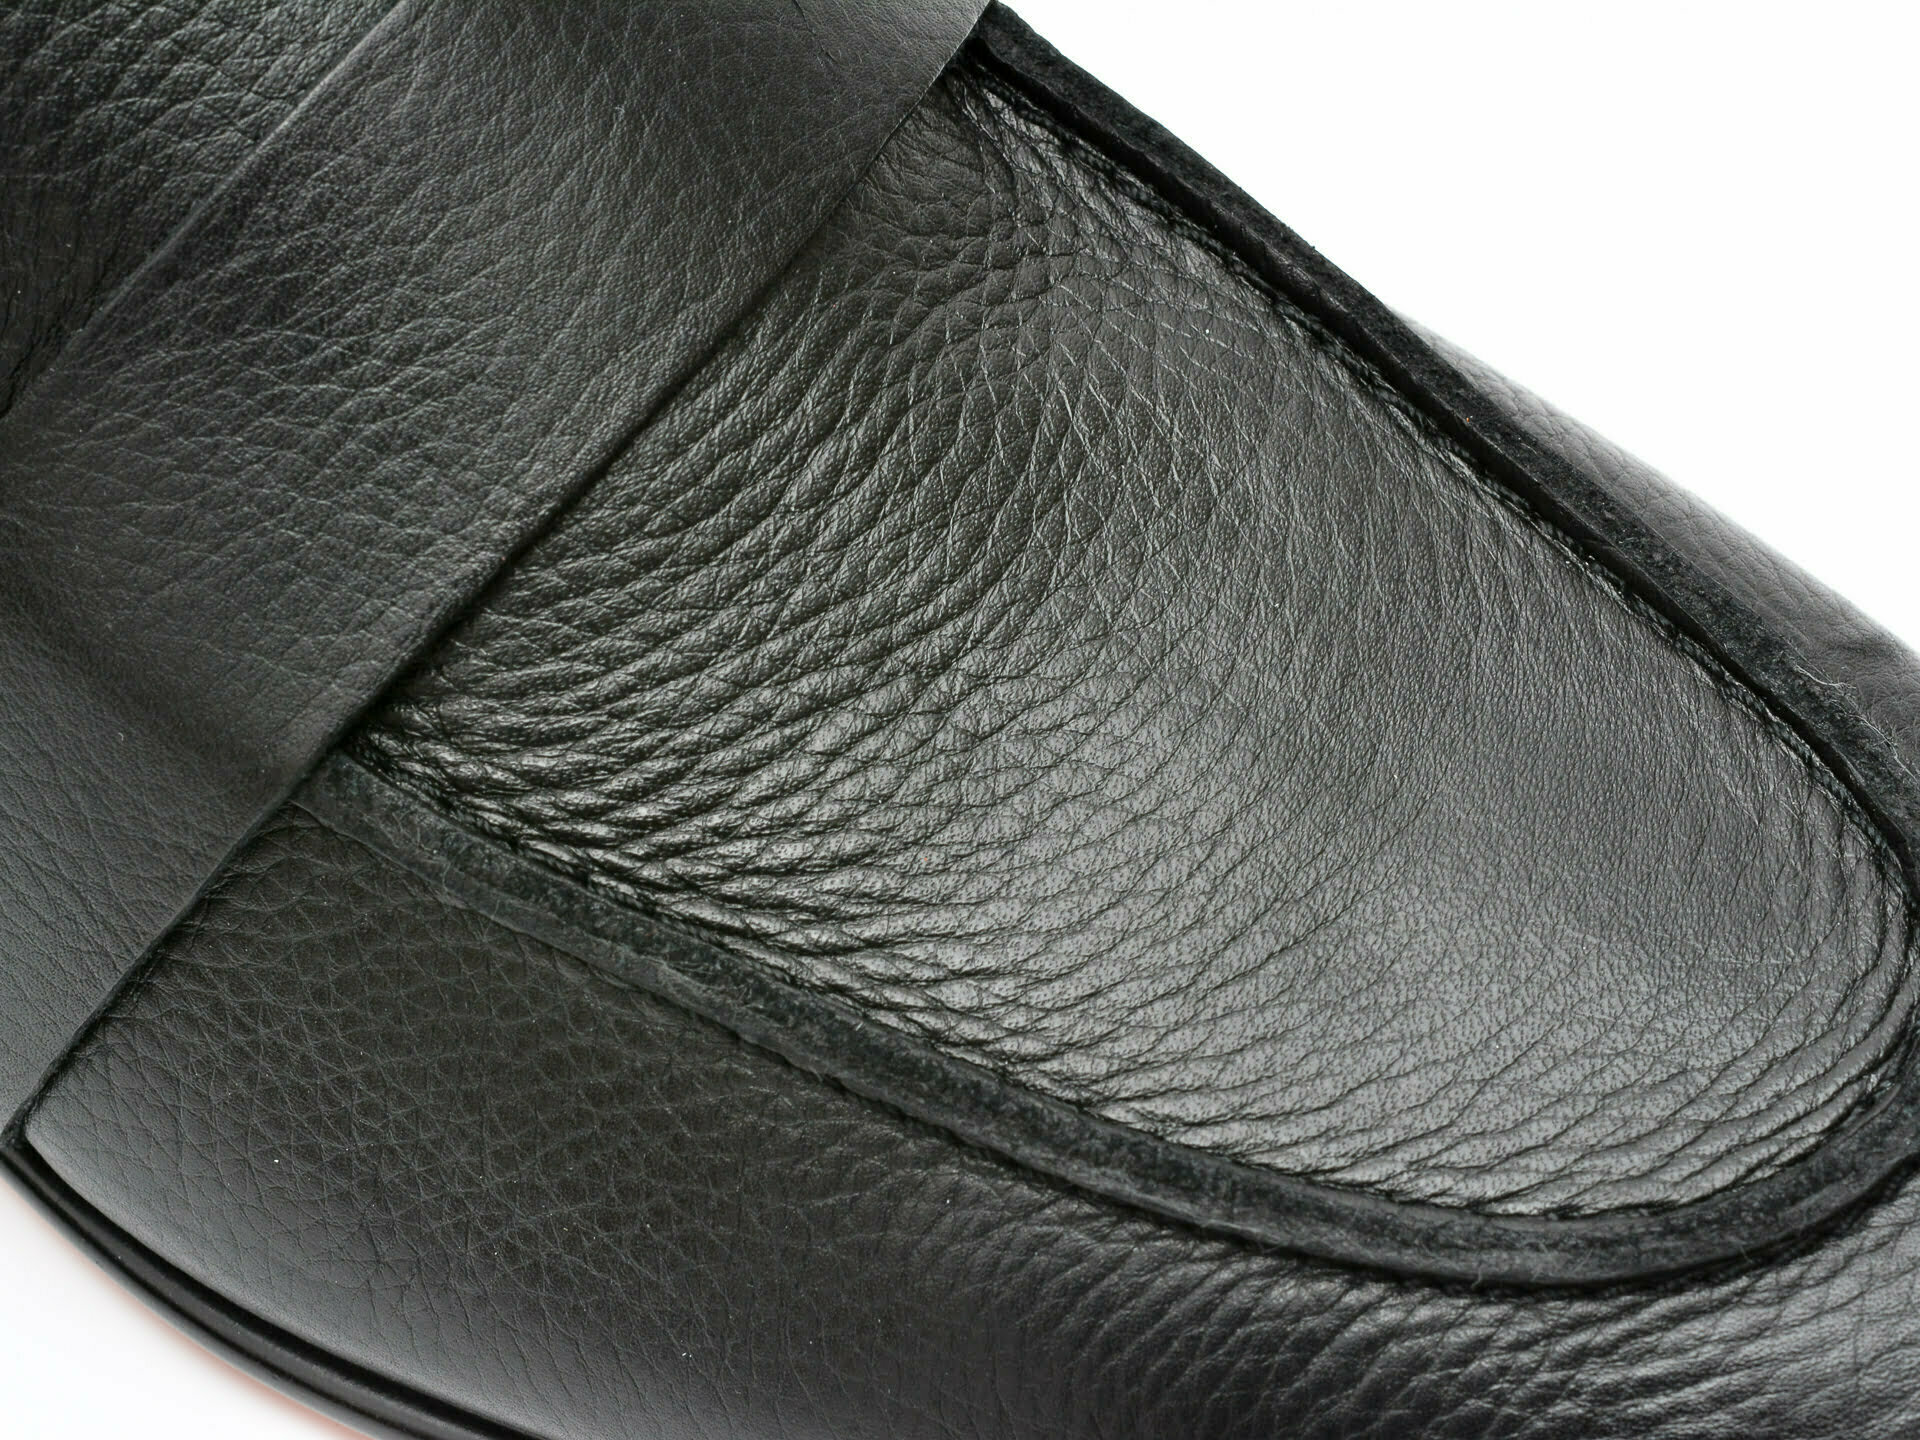 Comandă Încălțăminte Damă, la Reducere  Pantofi ALDO negri, BARDOW001, din piele naturala Branduri de top ✓